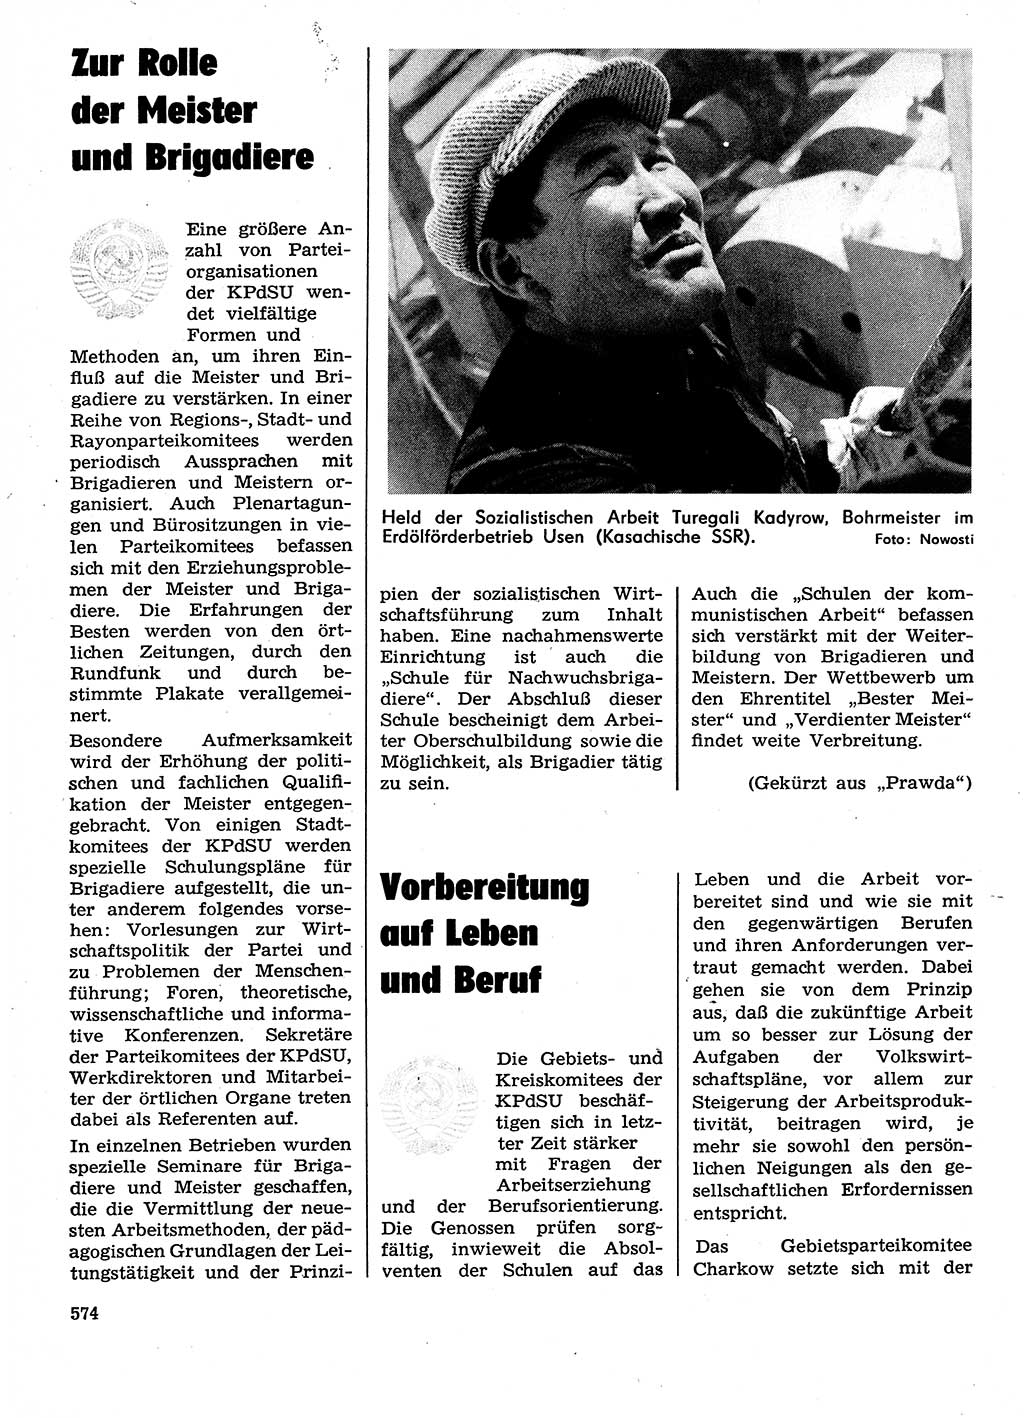 Neuer Weg (NW), Organ des Zentralkomitees (ZK) der SED (Sozialistische Einheitspartei Deutschlands) für Fragen des Parteilebens, 29. Jahrgang [Deutsche Demokratische Republik (DDR)] 1974, Seite 574 (NW ZK SED DDR 1974, S. 574)